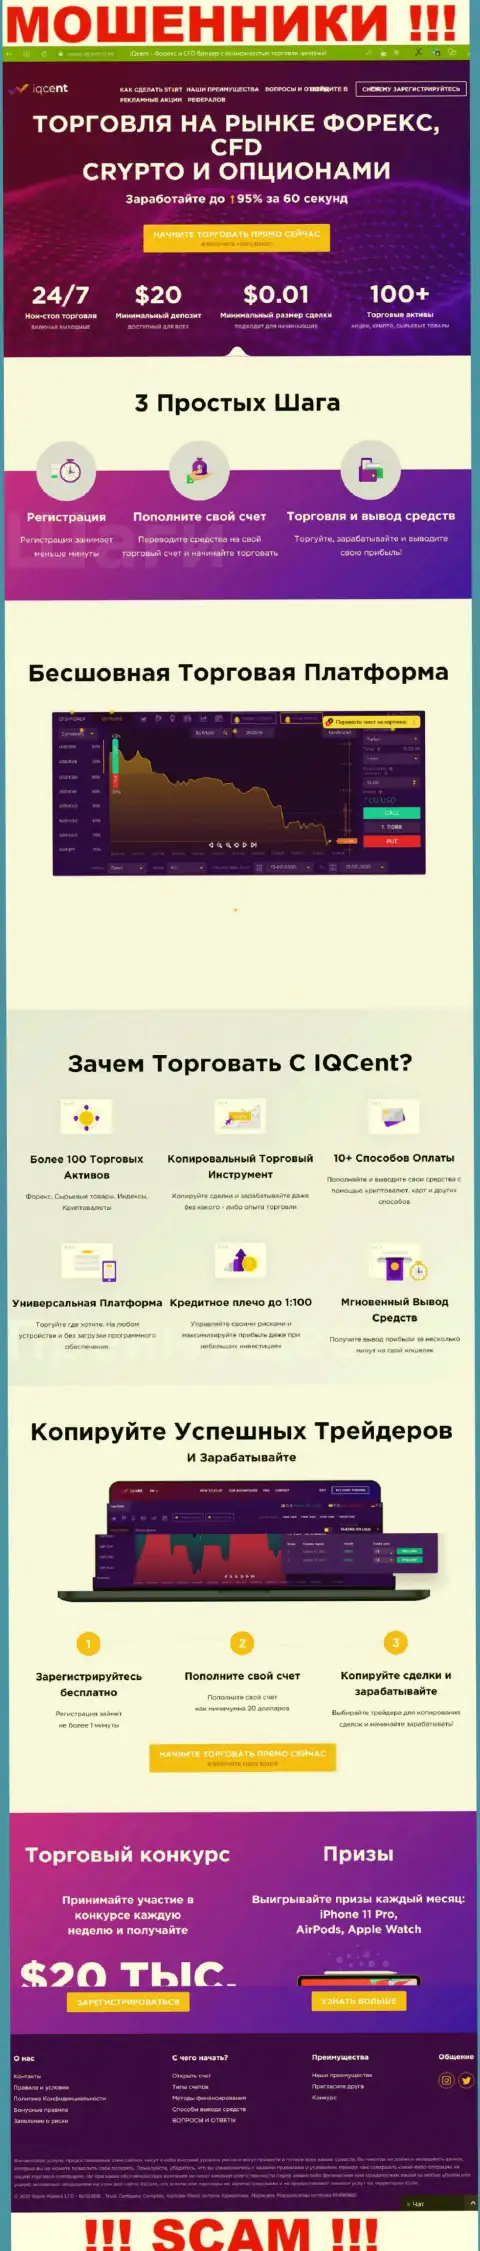 Официальный интернет-ресурс махинаторов IQCent Com, заполненный сведениями для доверчивых людей